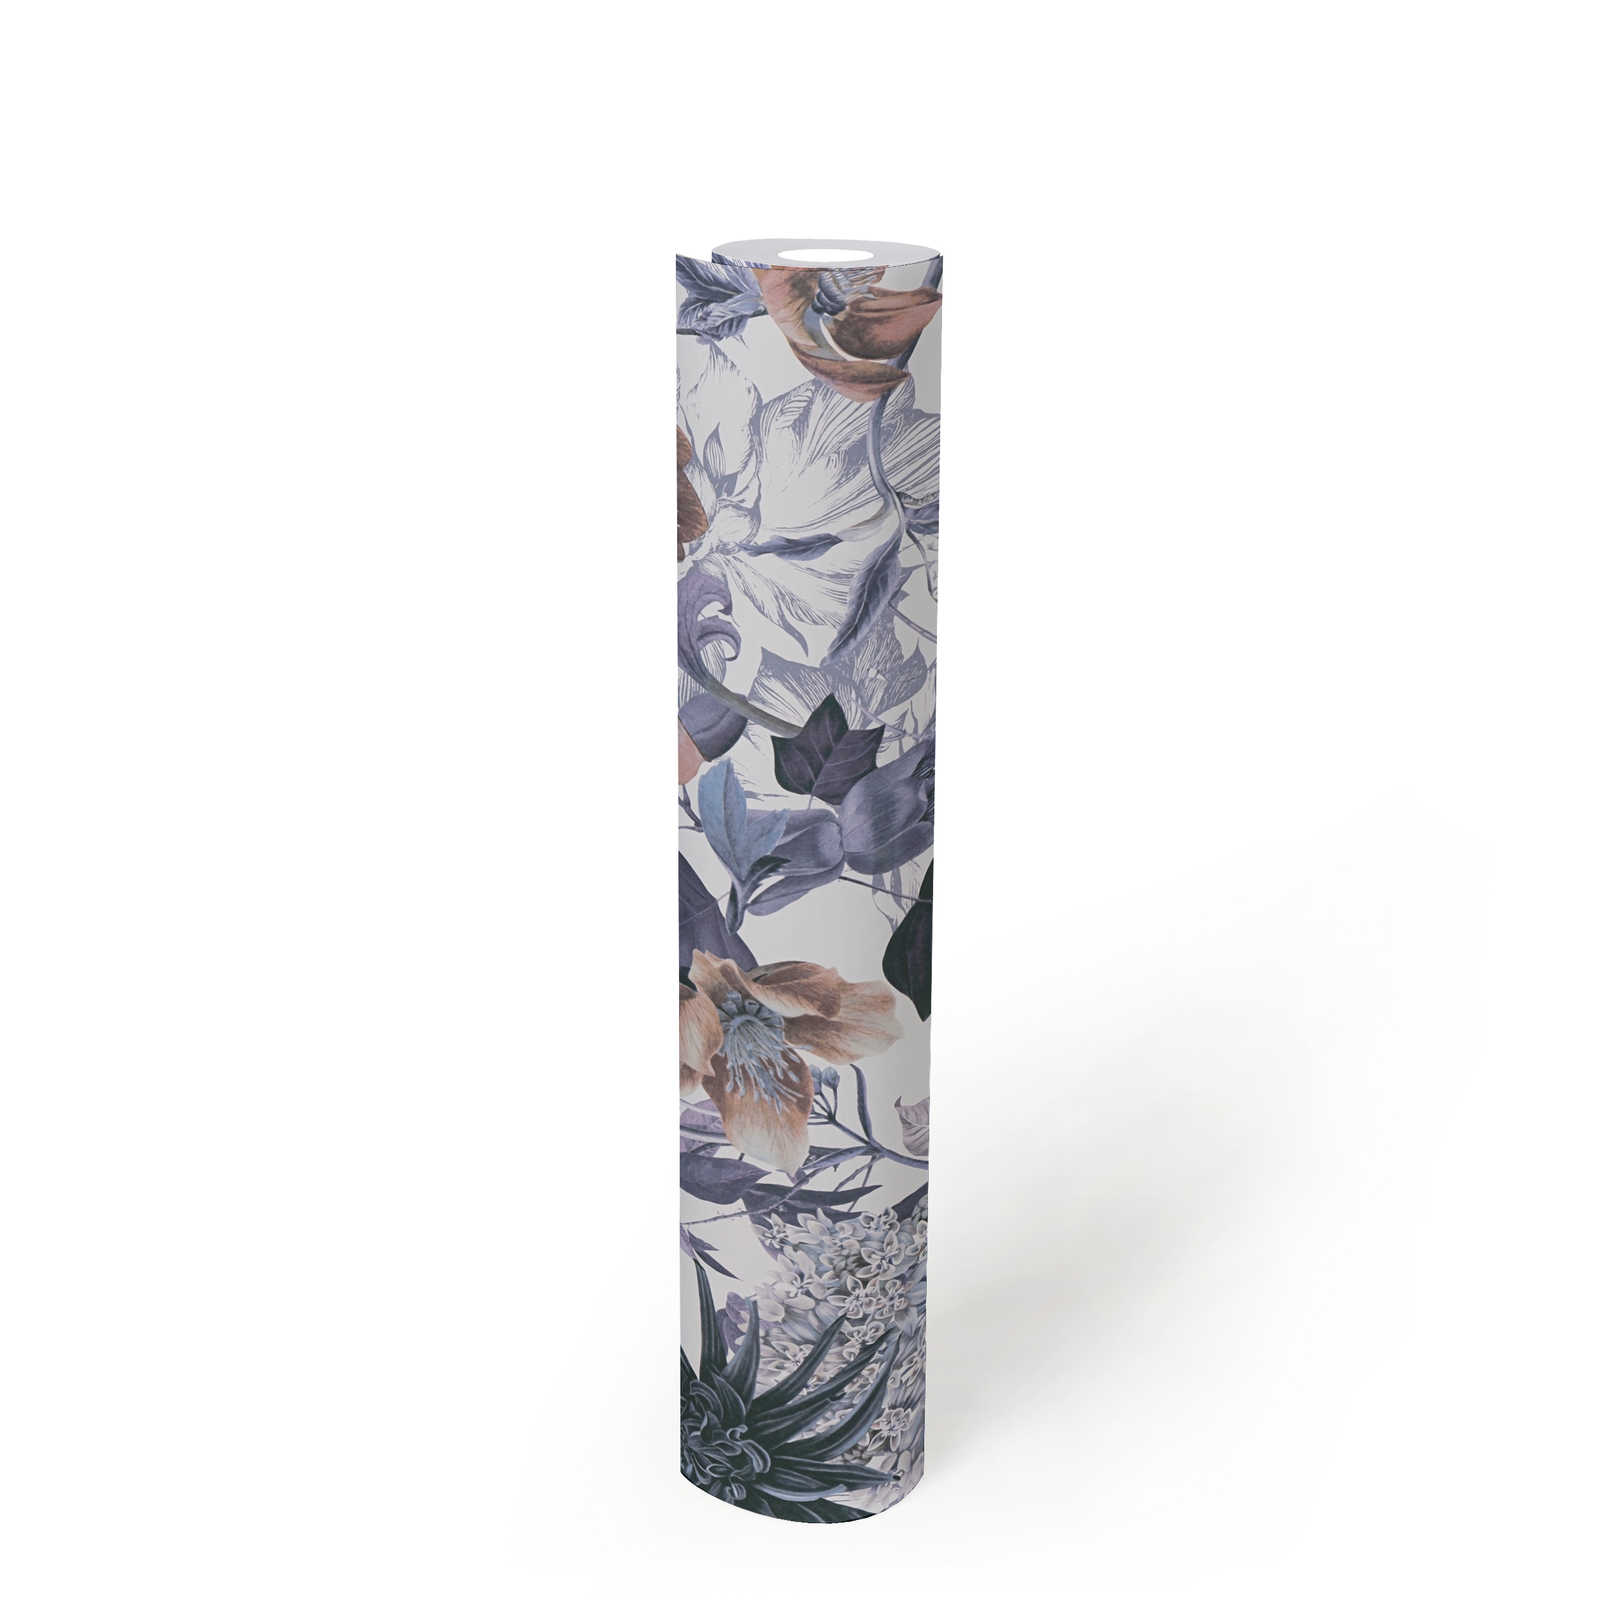             Behang met bloemenpatroon - blauw, bruin, grijs
        